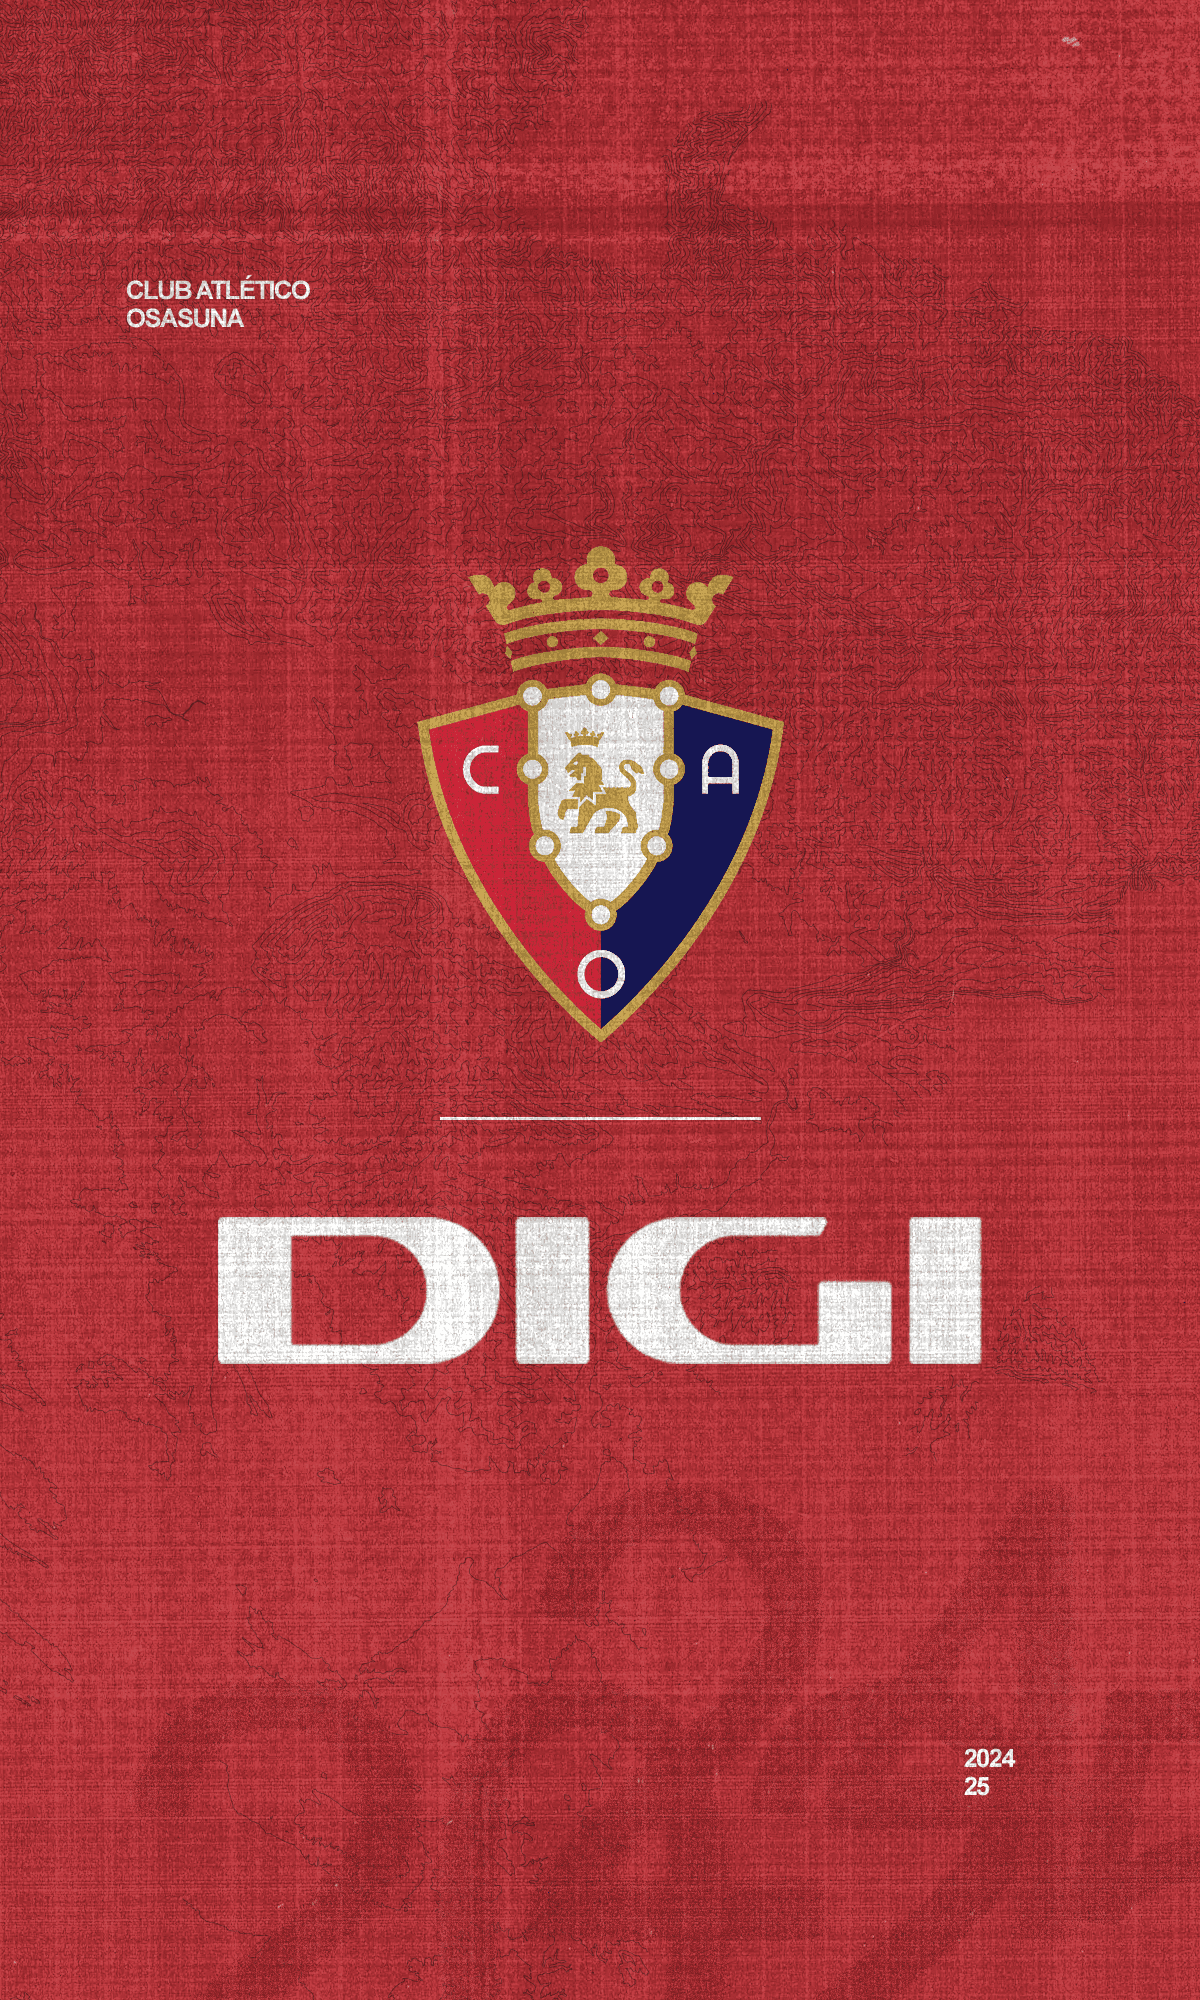 Club Atlético Osasuna announces DIGI as official sponsor for the next two seasons